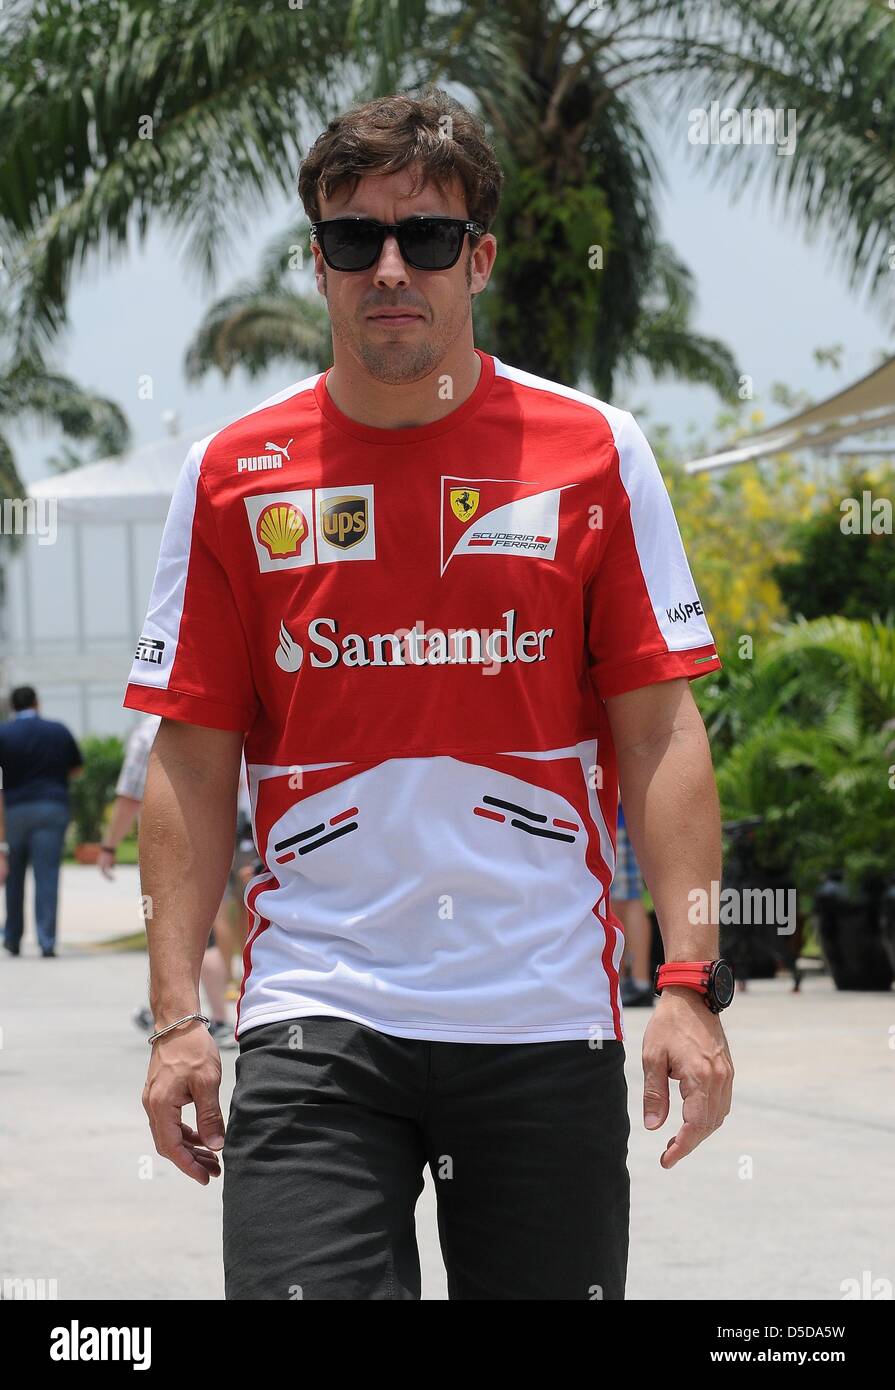 Le 21 mars 2013, Sepang, Malaisie - Scuderia Ferrari pilote de Formule 1 espagnol Fernando Alonso de marcher dans enclos dans le Circuit International de Sepang sur la Formule Un Grand Prix de Malaisie 2013. (Photo de Robertus/Pudyanto AFLO) Banque D'Images